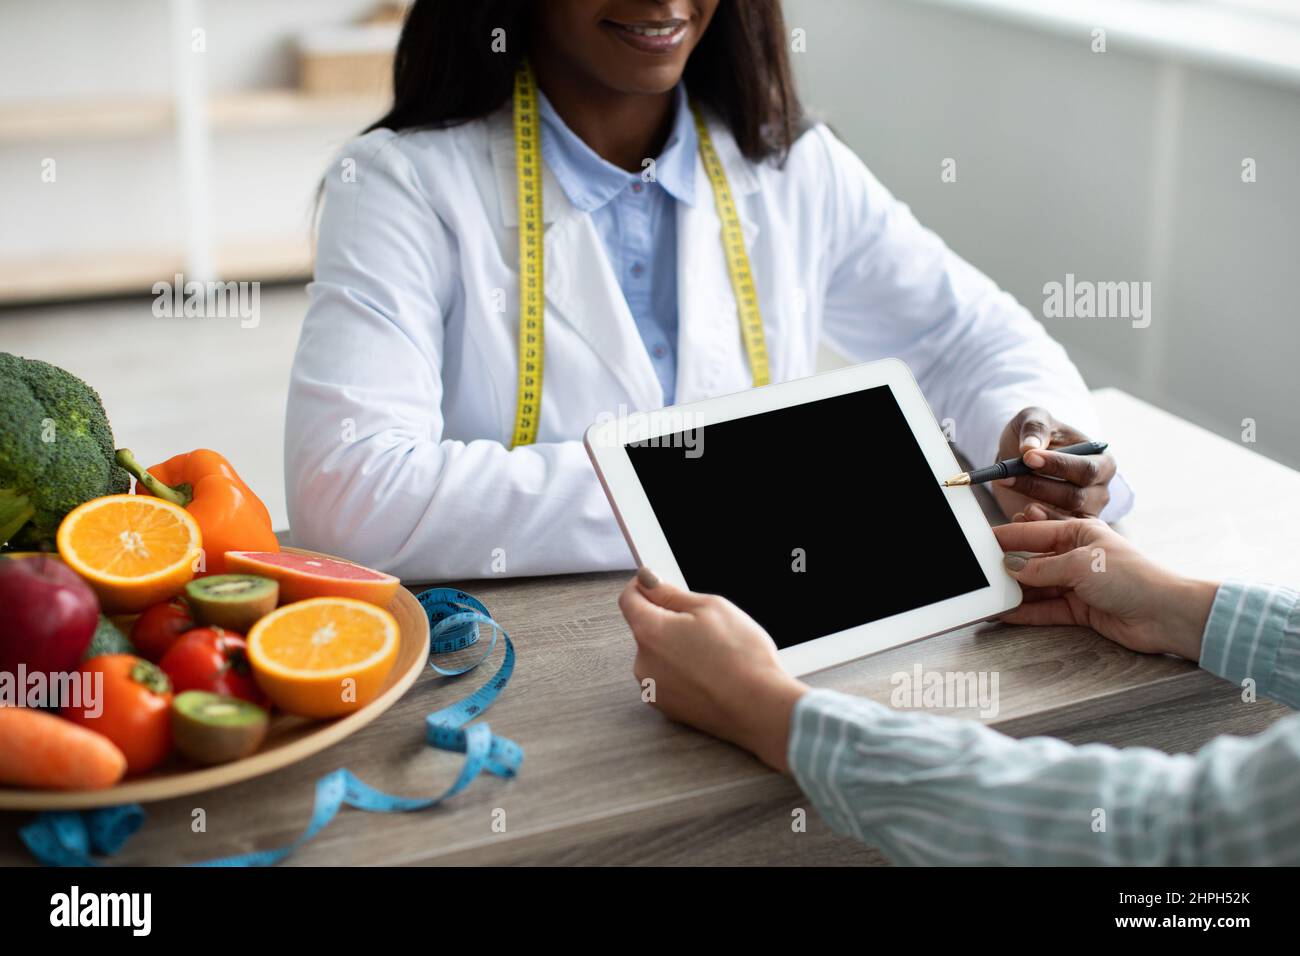 Diététiste féminine noire pointant sur un comprimé avec écran blanc, expliquant le plan de régime et donnant des conseils au patient Banque D'Images